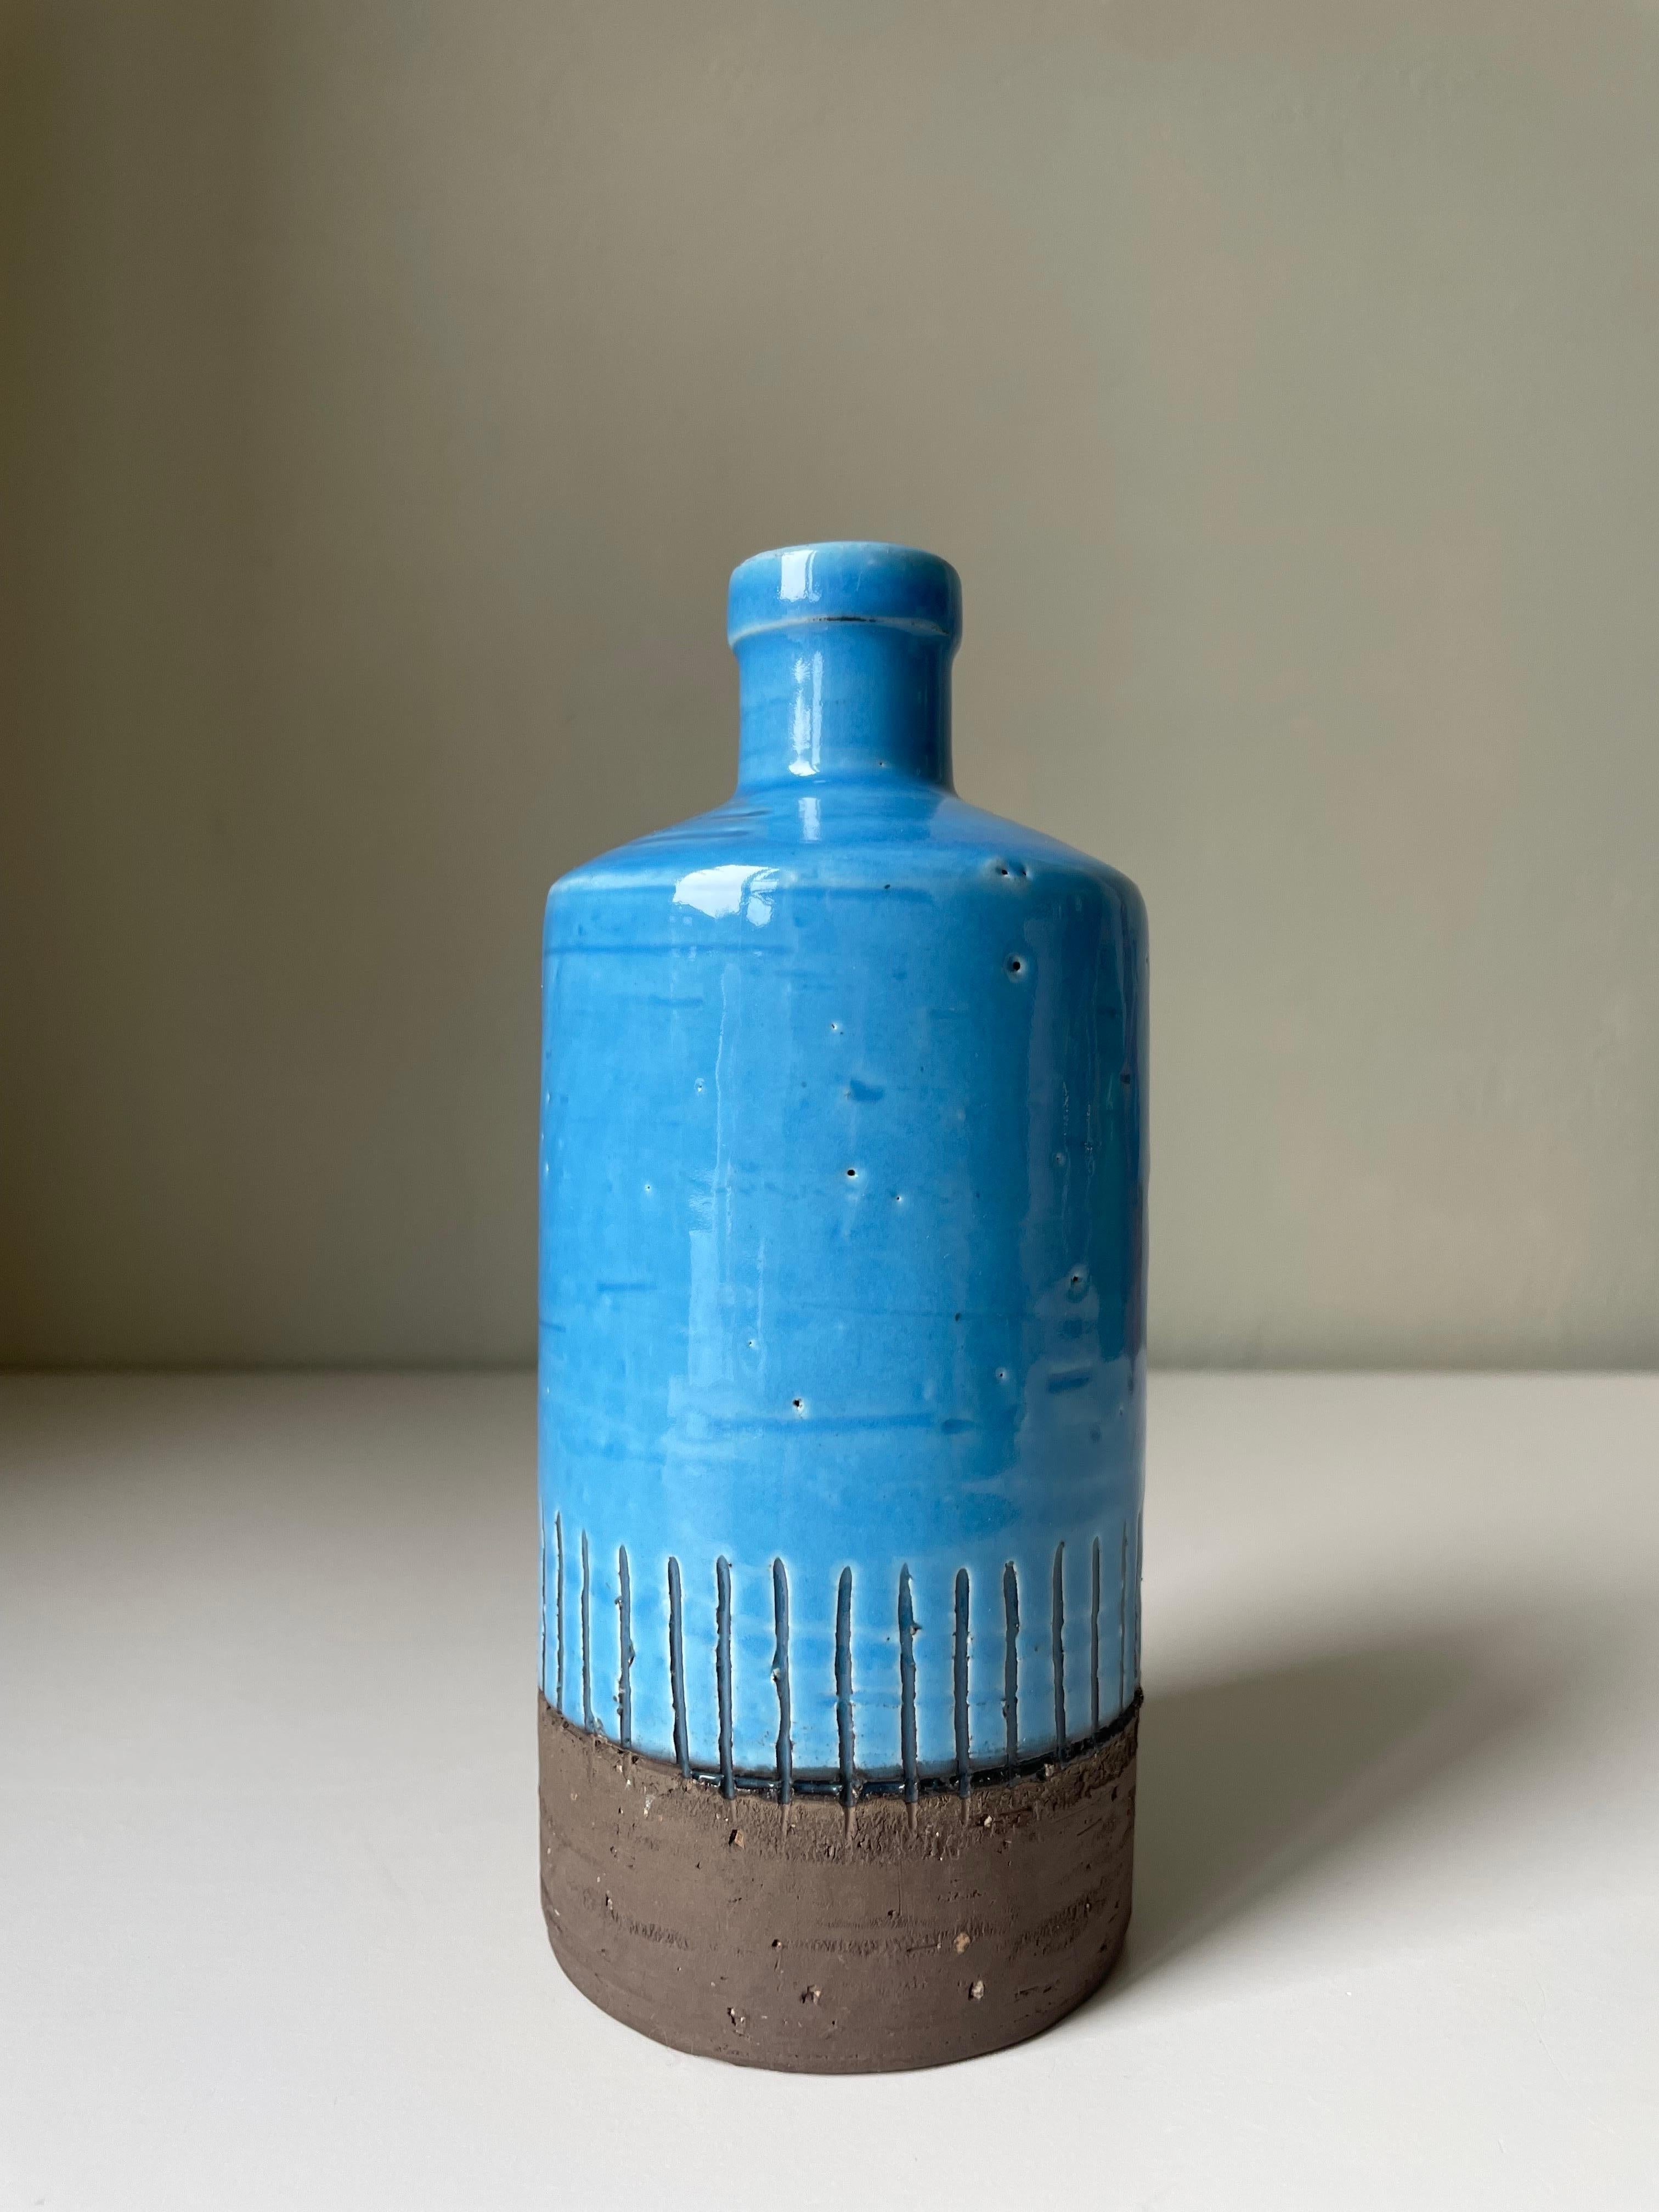 Vase chamotte suédois moderne du milieu du siècle, en forme de bouteille, fait à la main, avec une glaçure bleu turquoise brillante. Col élancé et corps en forme de cylindre. La partie inférieure est brute et non émaillée, tandis que la partie